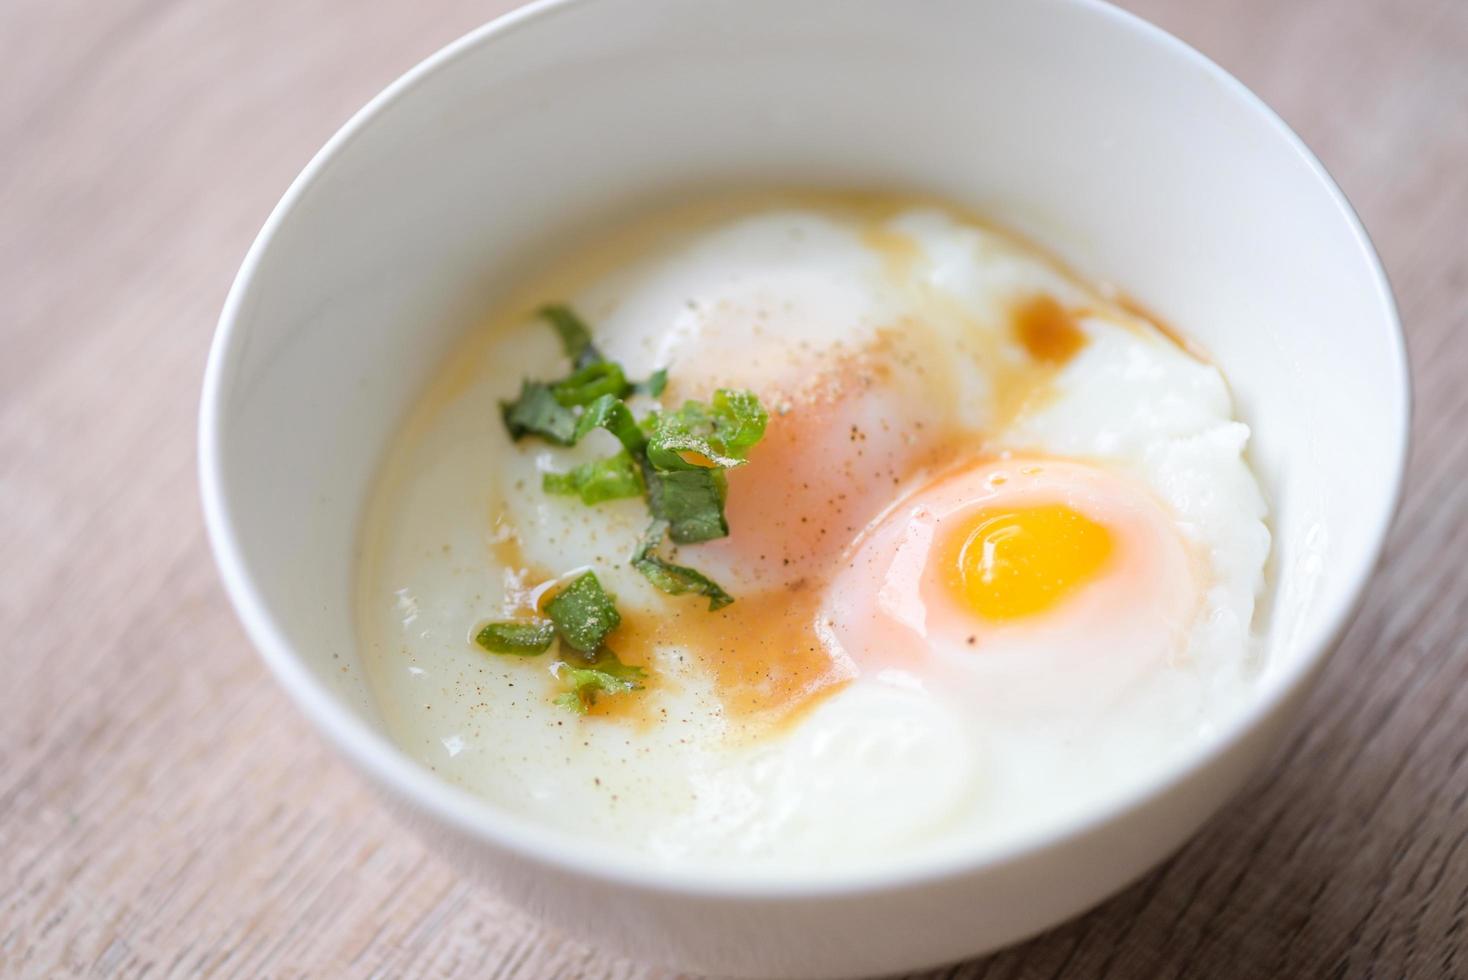 eifrühstück, weich gekochte eier auf weißer schüssel mit pfeffer, koriander auf holztisch, onsen tamago ei - ei mikrowelle foto